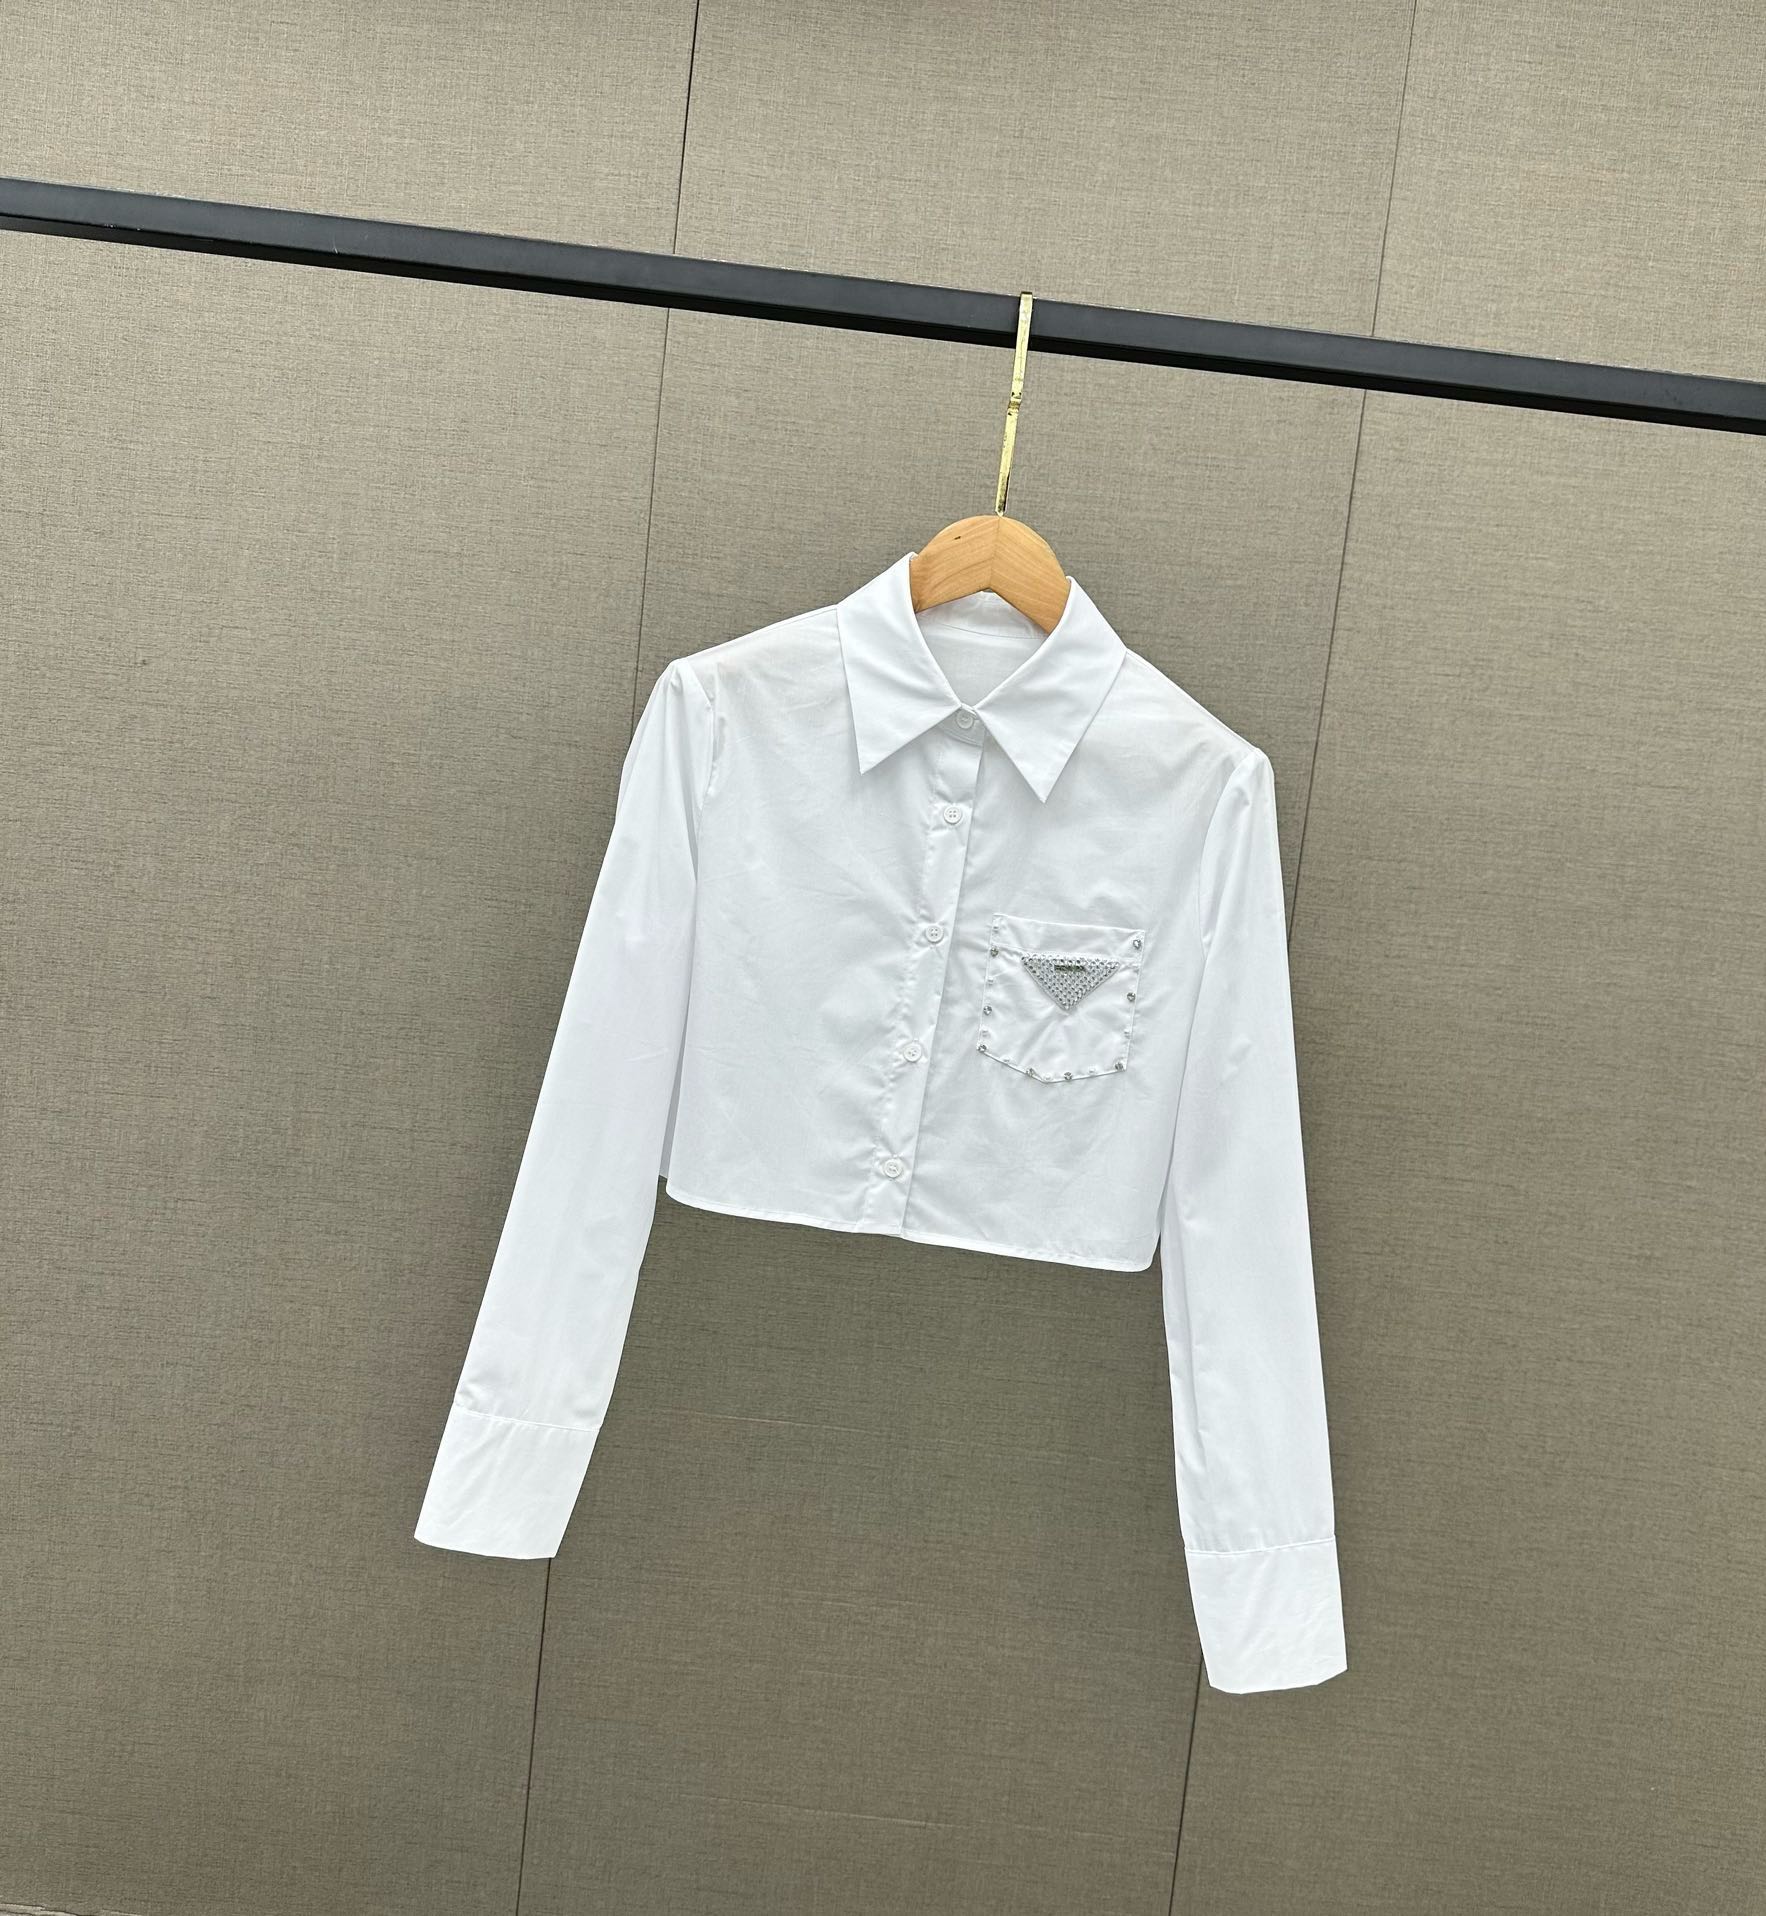 衬衫千千万怎么才能穿出新鲜感呢答案都在这件Prada衬衫里啦一眼是高品质质感的衬衫版型对身材包容性好藏肉